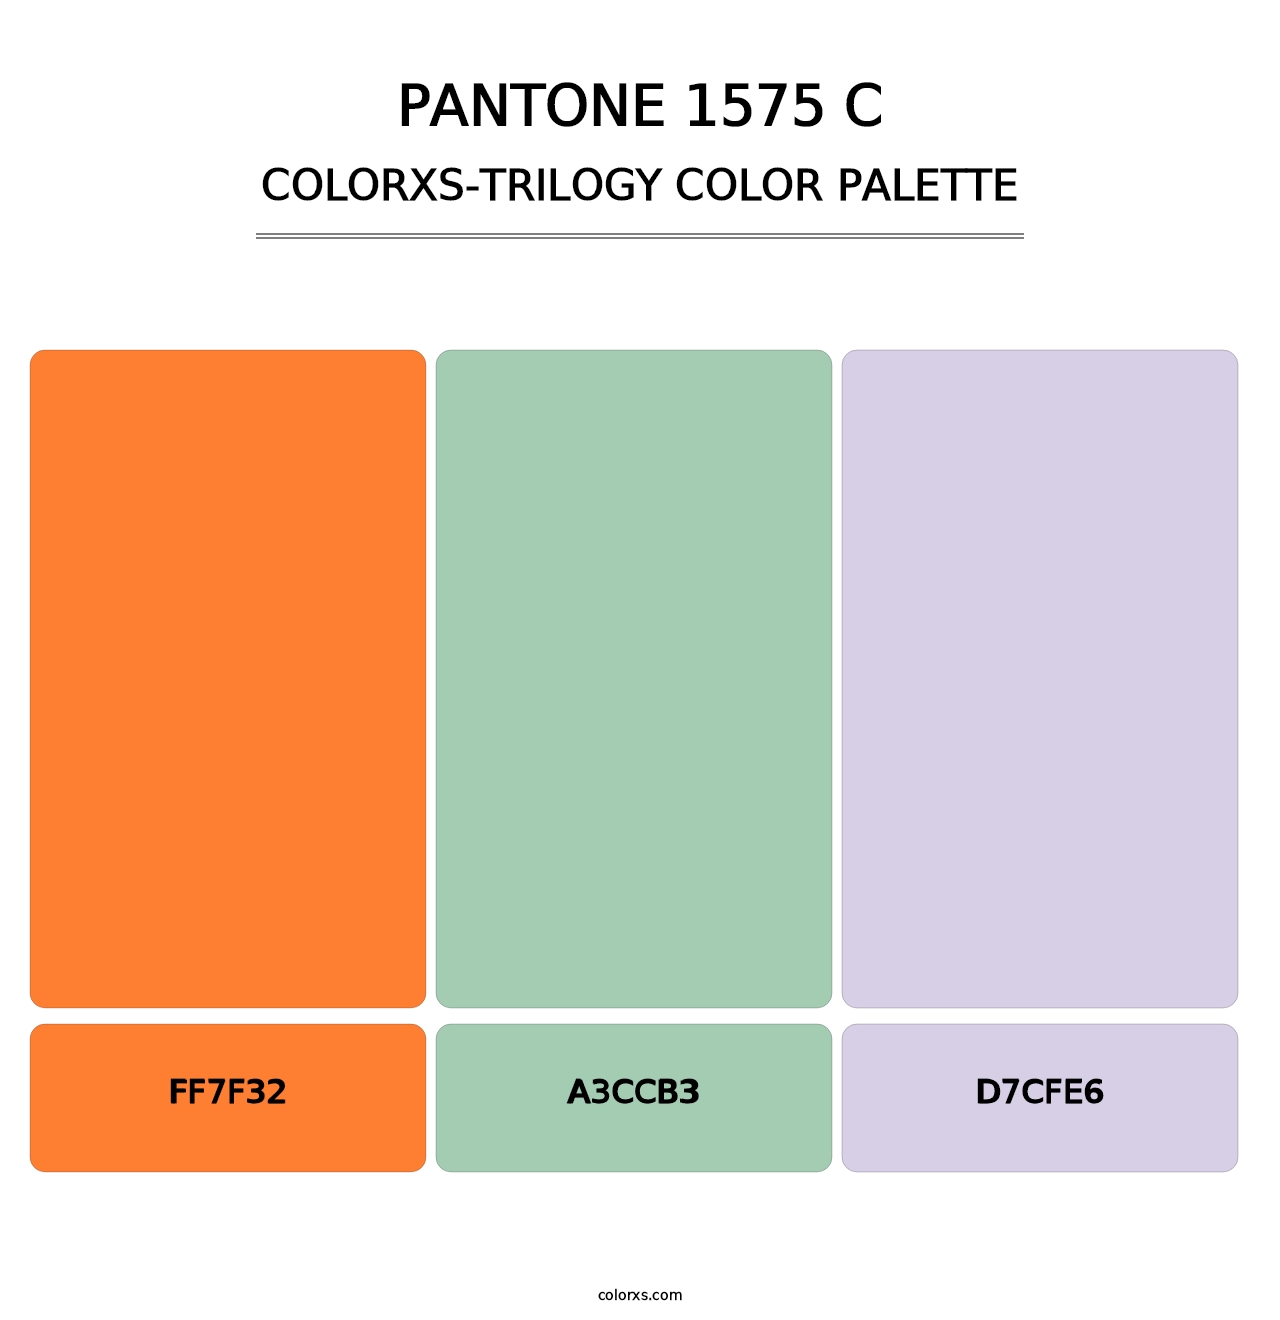 PANTONE 1575 C - Colorxs Trilogy Palette